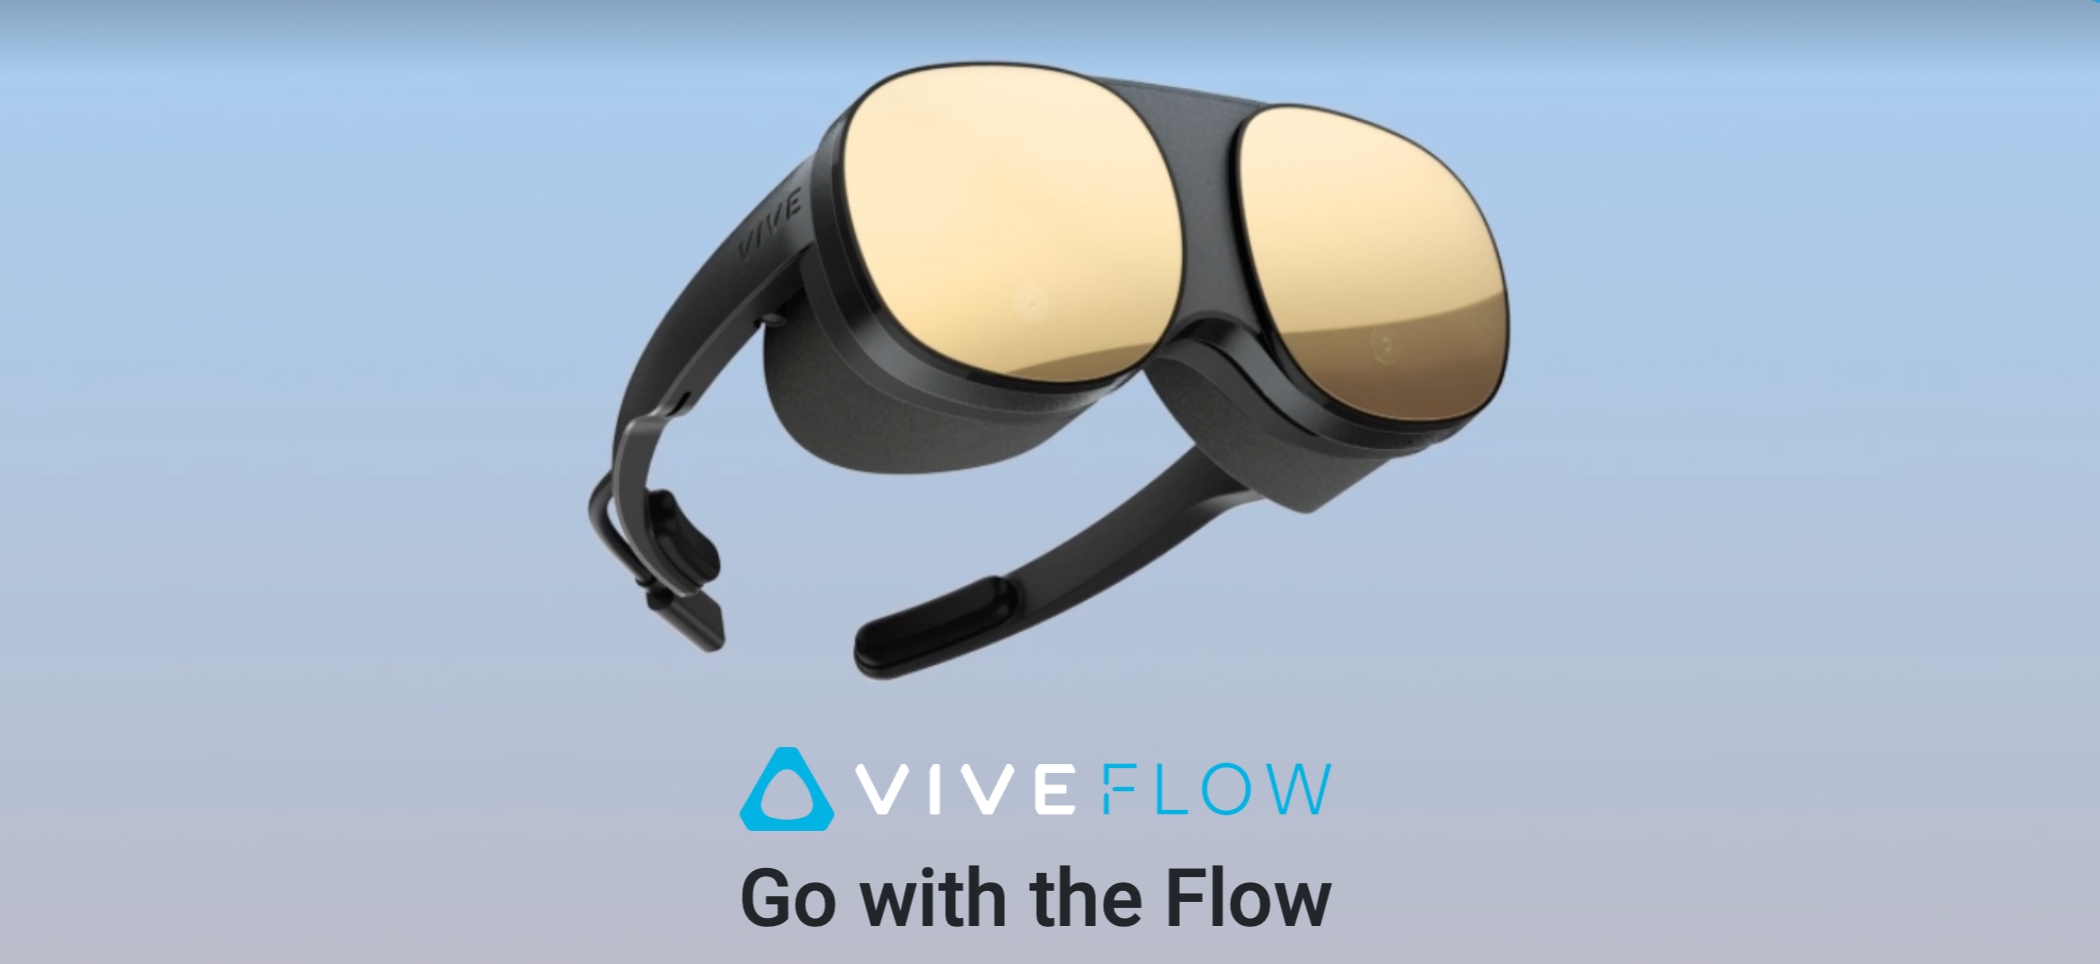 HTC Vive Flow : un casque VR compact qui utilise votre smartphone comme télécommande